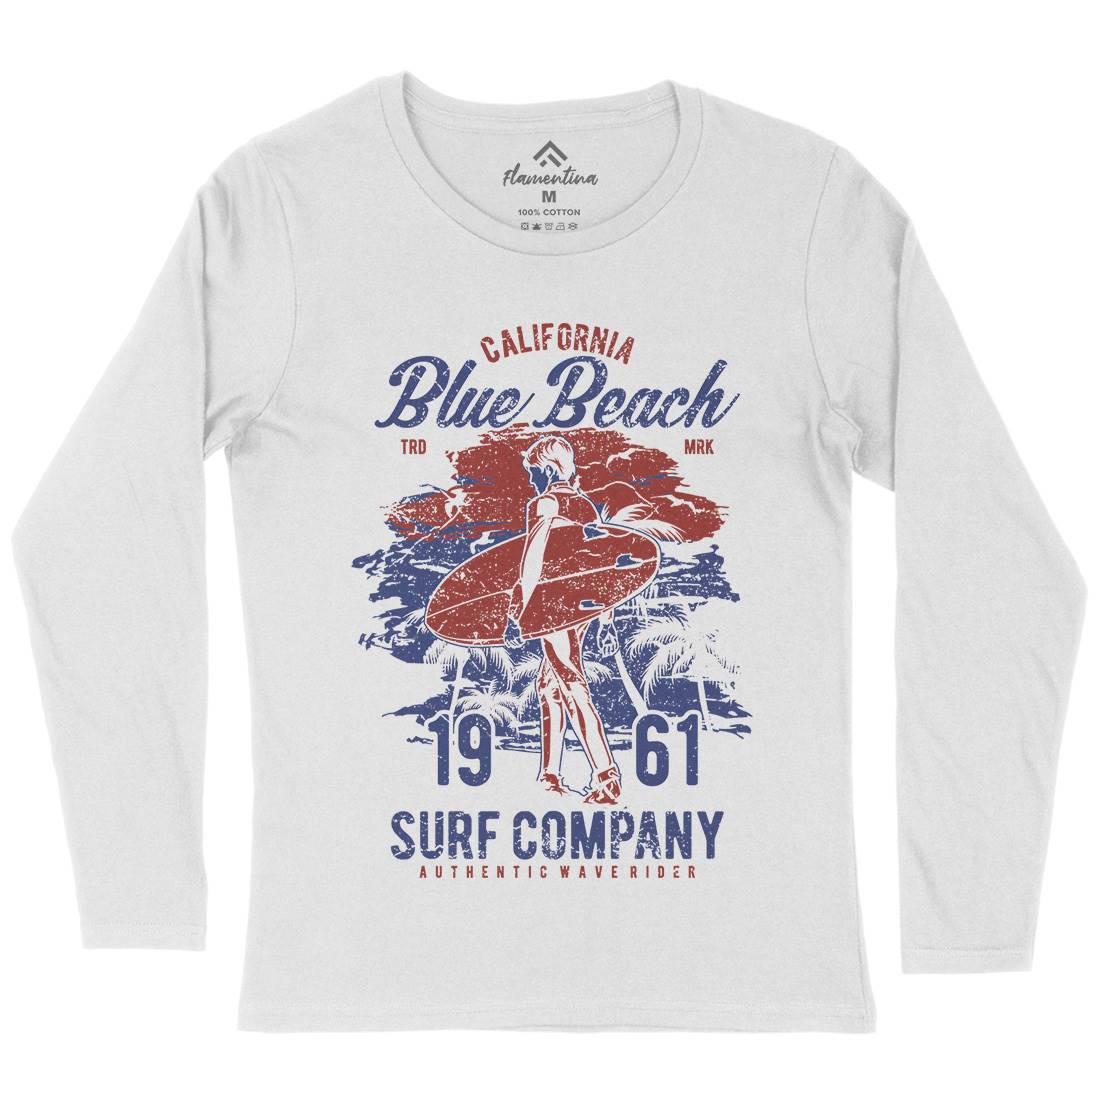 Blue Beach Womens Long Sleeve T-Shirt Surf A621